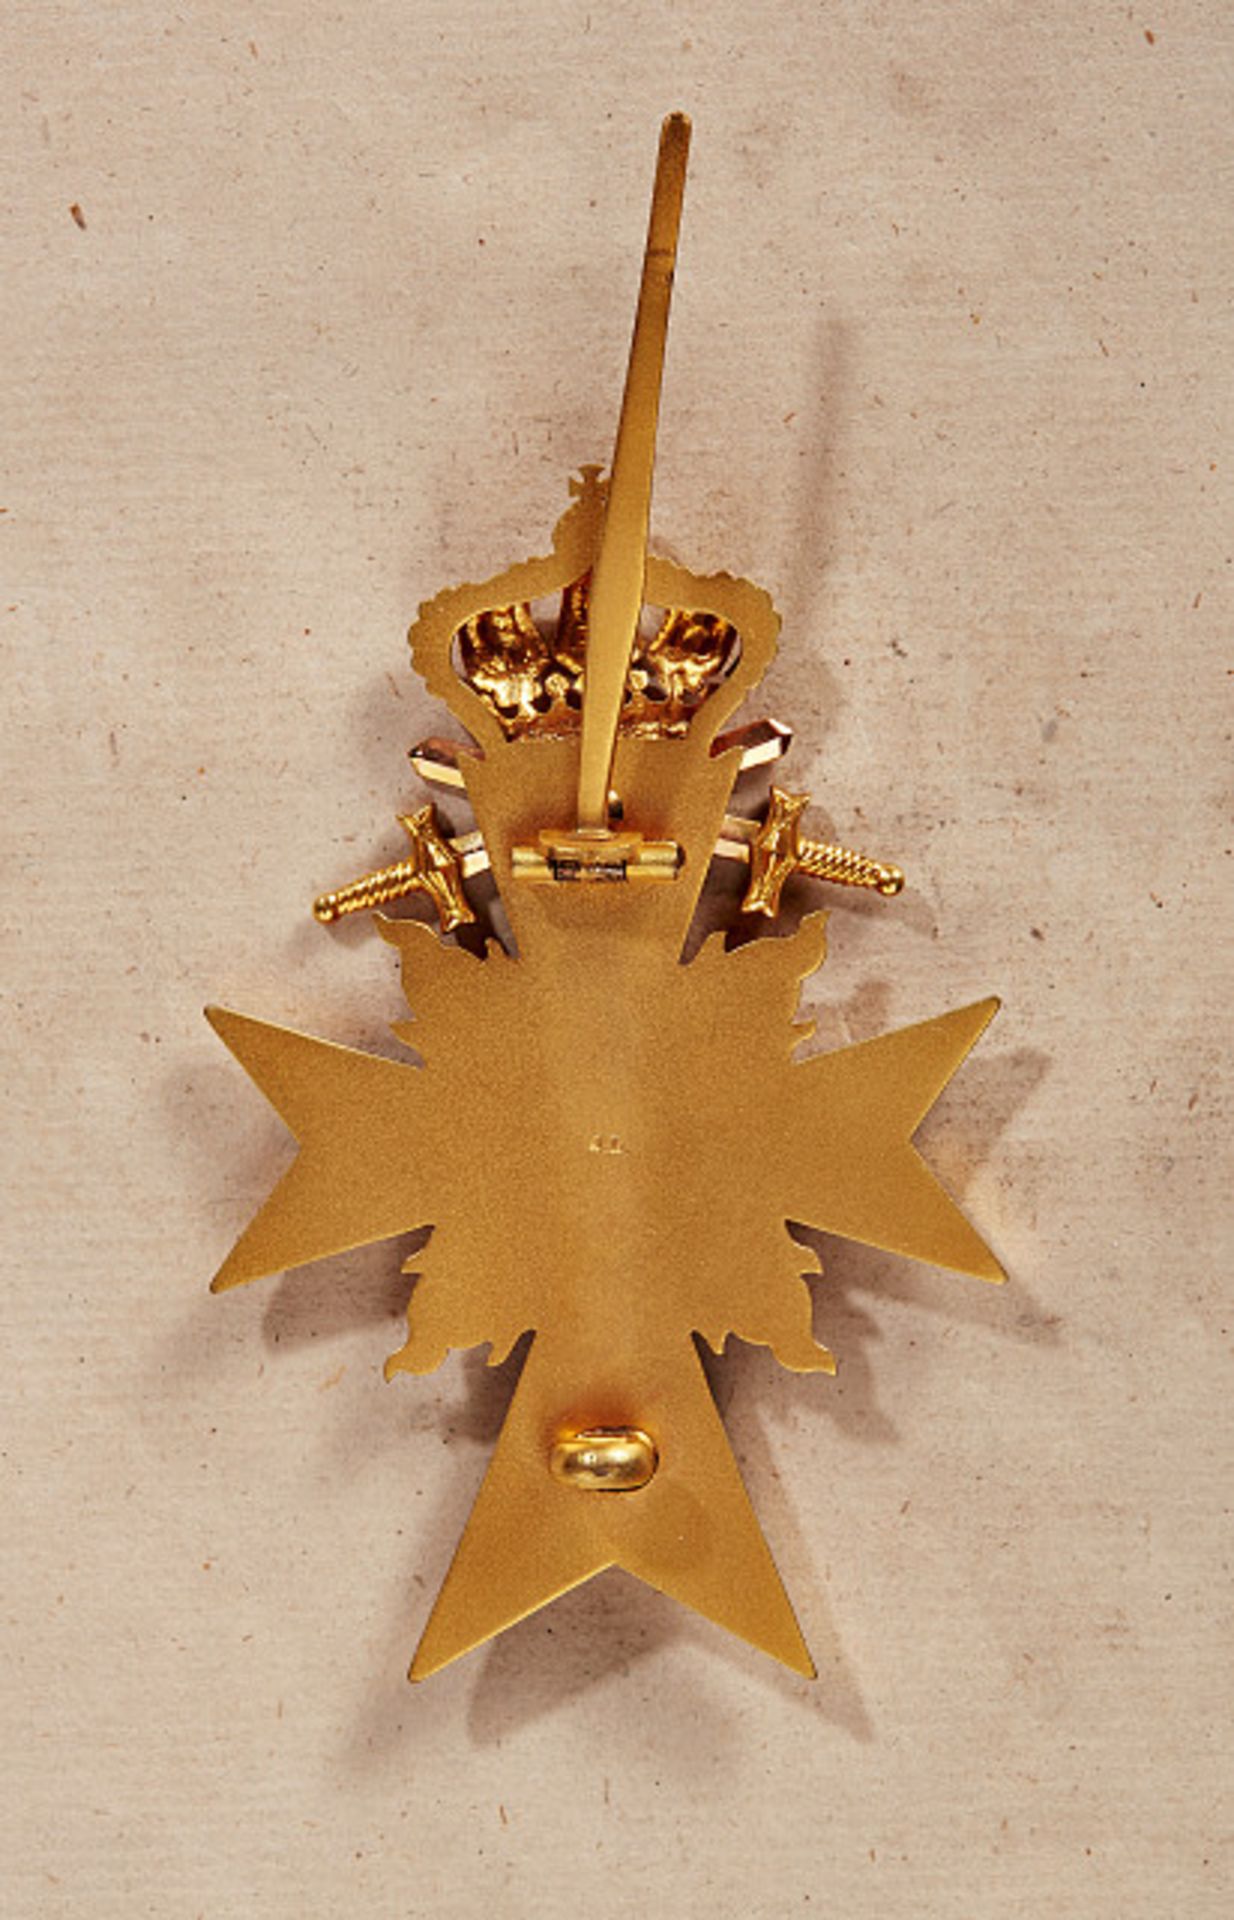 KÖNIGREICH BAYERN - MILITÄRVERDIENSTORDEN : Offizierskreuz mit Schwertern. Gold und Emaille, an - Image 2 of 2